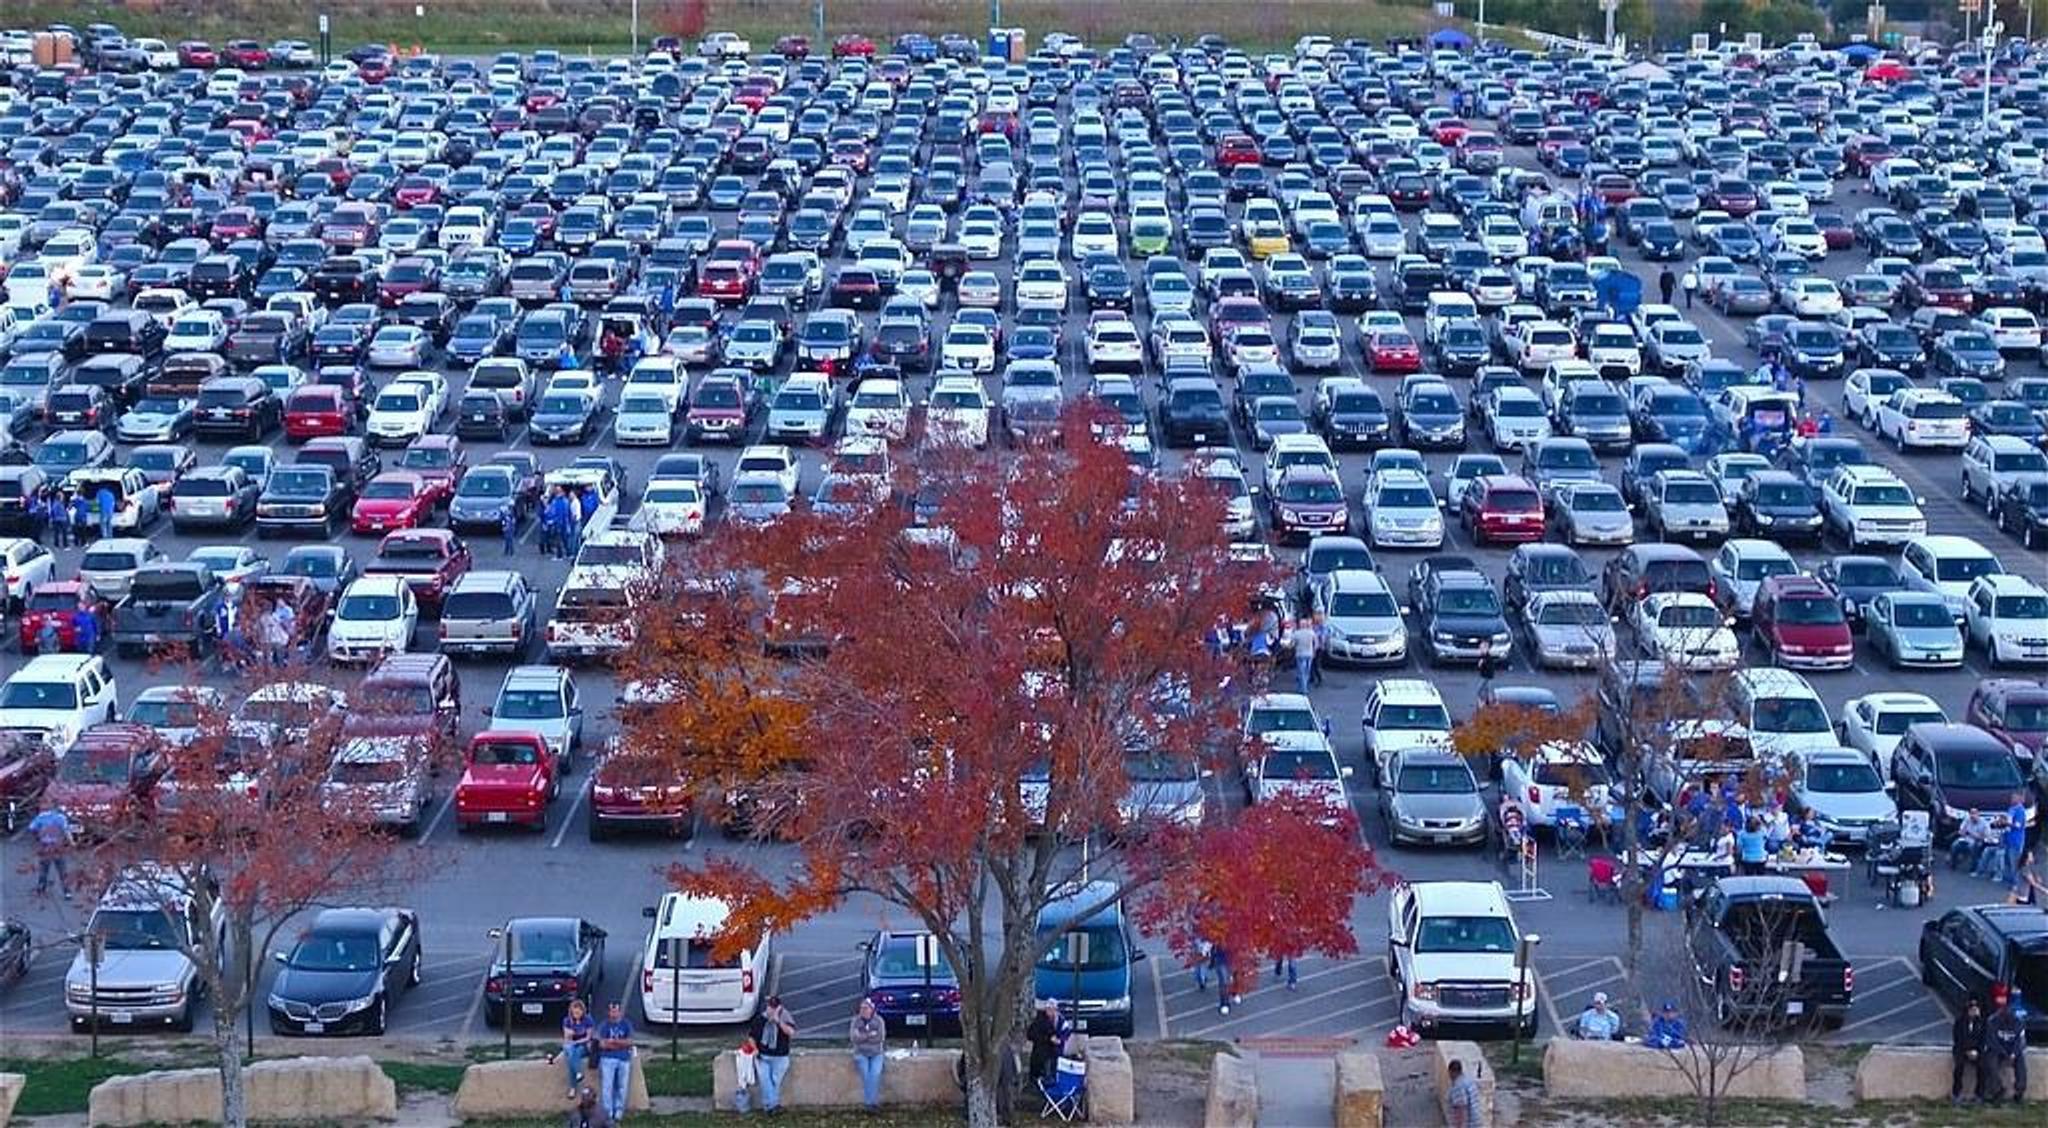  Több száz autó egy parkolóban